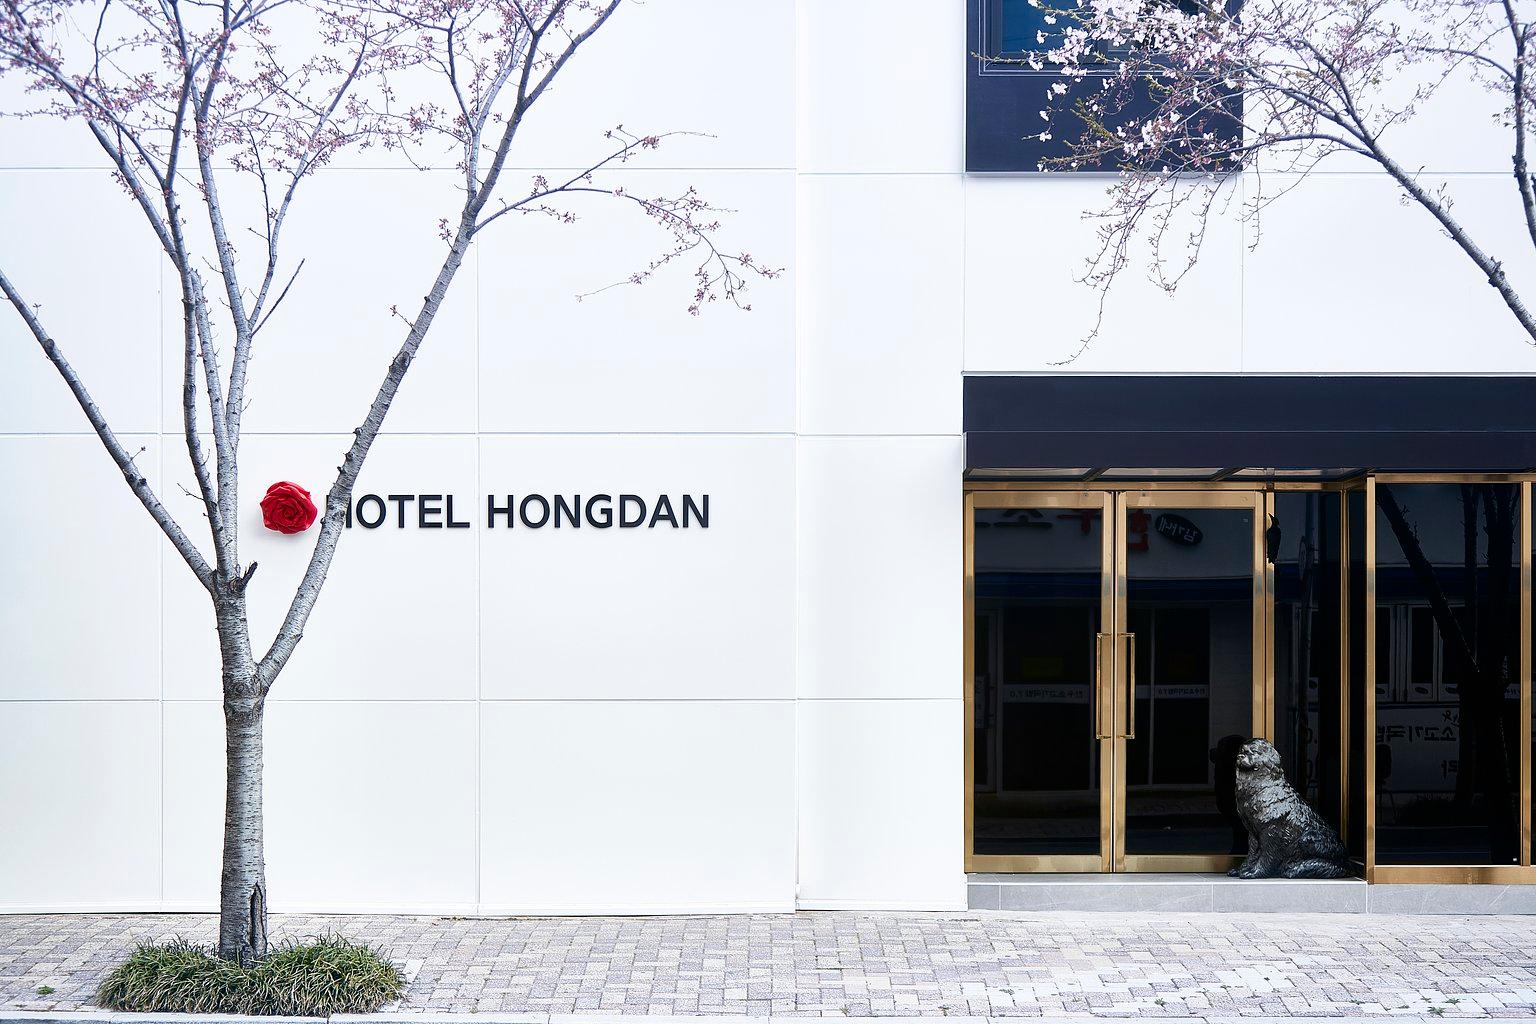 HOTEL HONGDAN